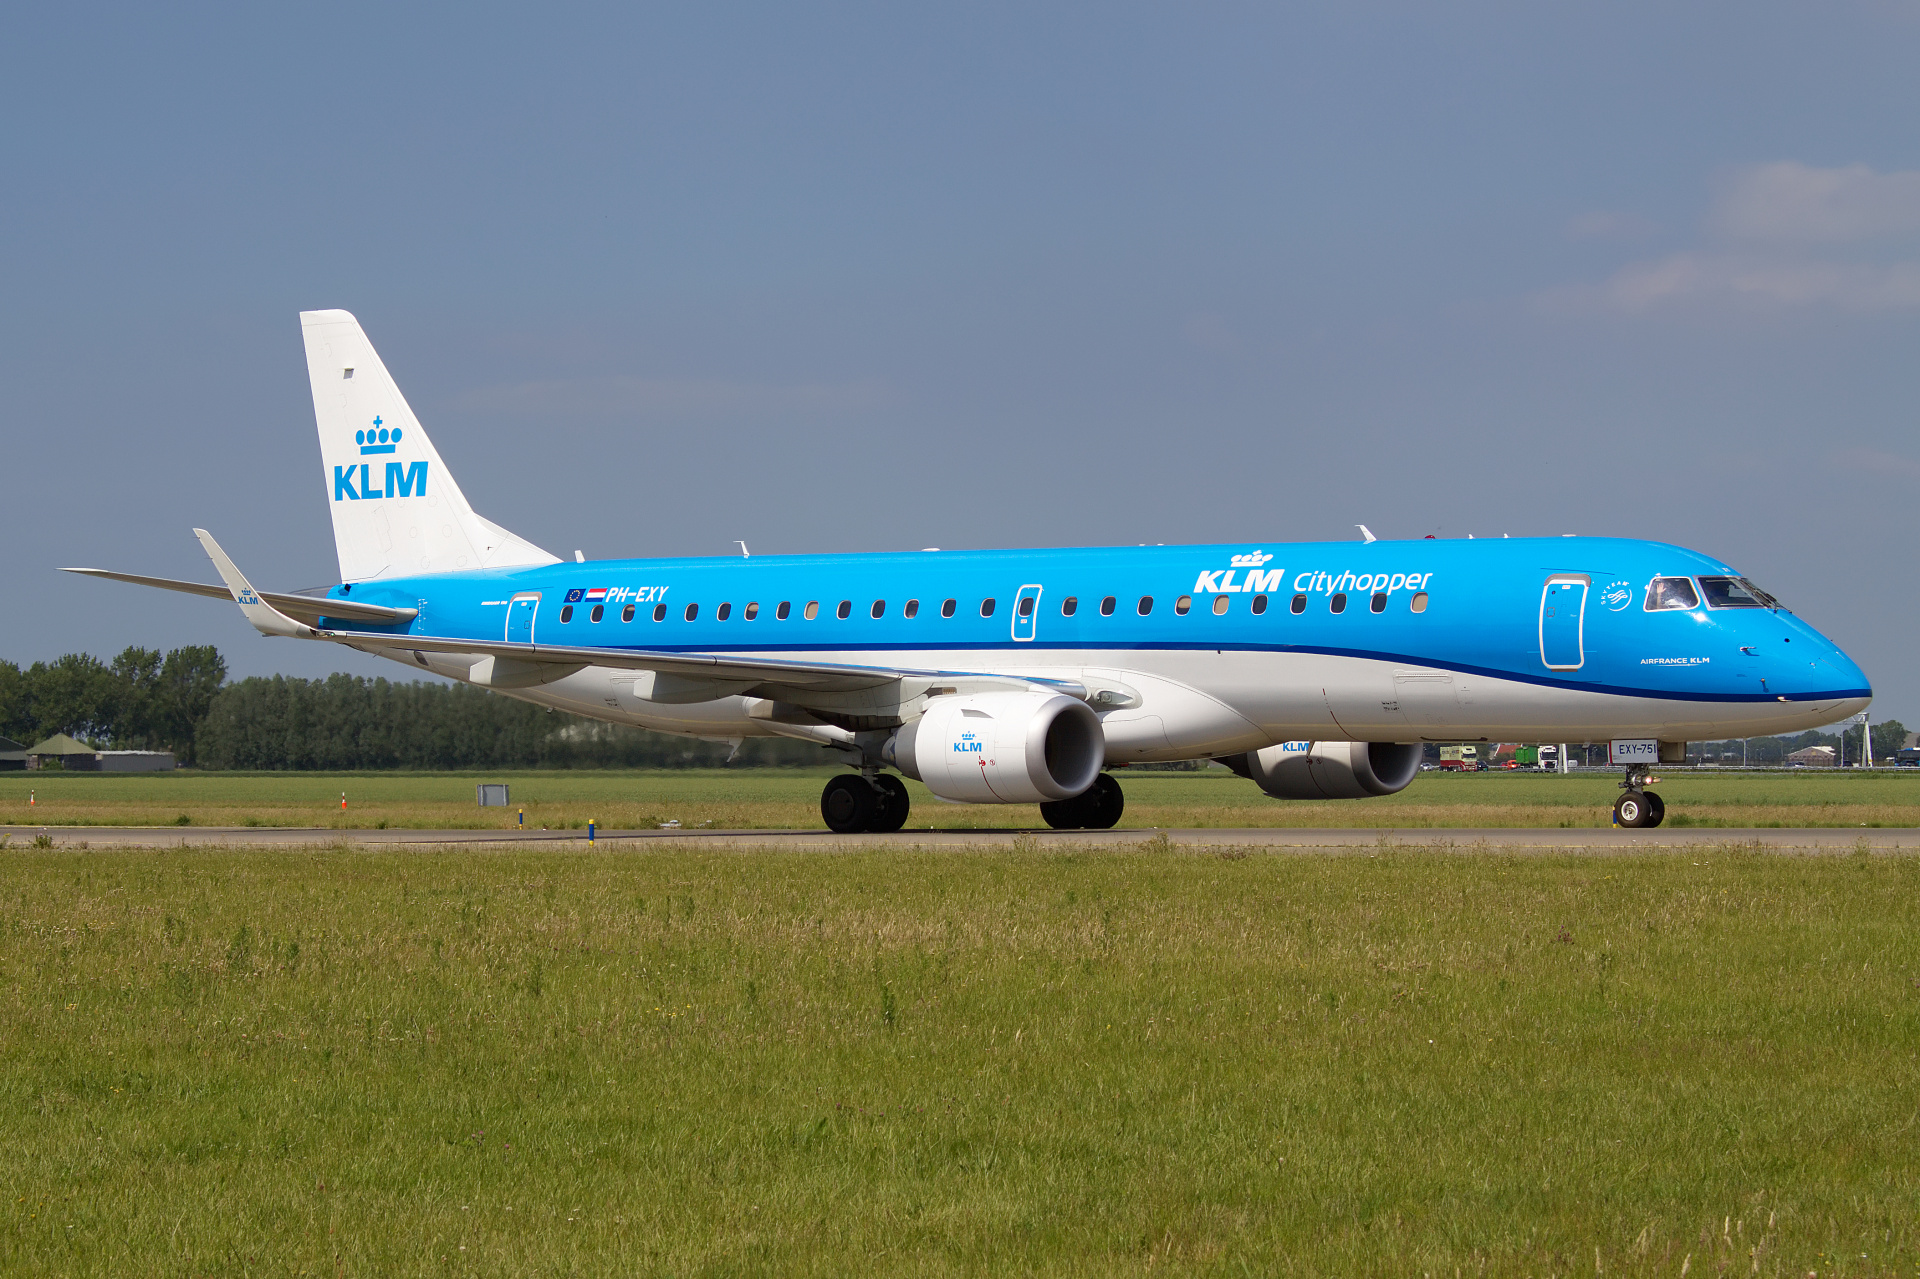 PH-EXY (Aircraft » Schiphol Spotting » Embraer E190 » KLM Cityhopper)